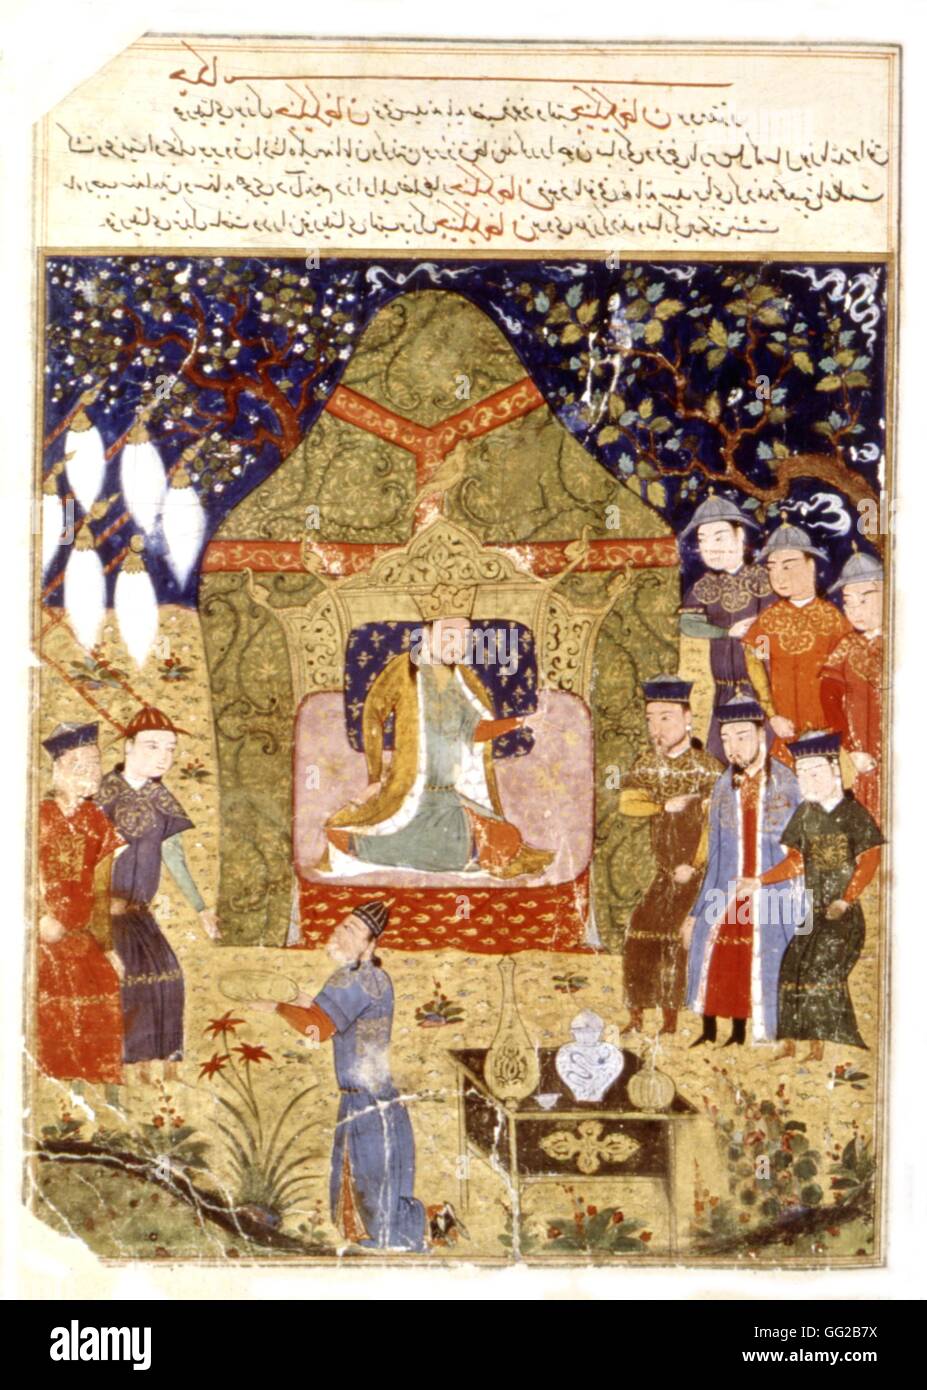 Manuscrit persan illustré de 106 tableaux : 'Jami'al Tawarikh" par Rachid ad-Dîn (Histoire des Mongols). Gengis Khan, entouré de ses fils, se proclame lui-même empereur. 14ème siècle de l'école persane Banque D'Images